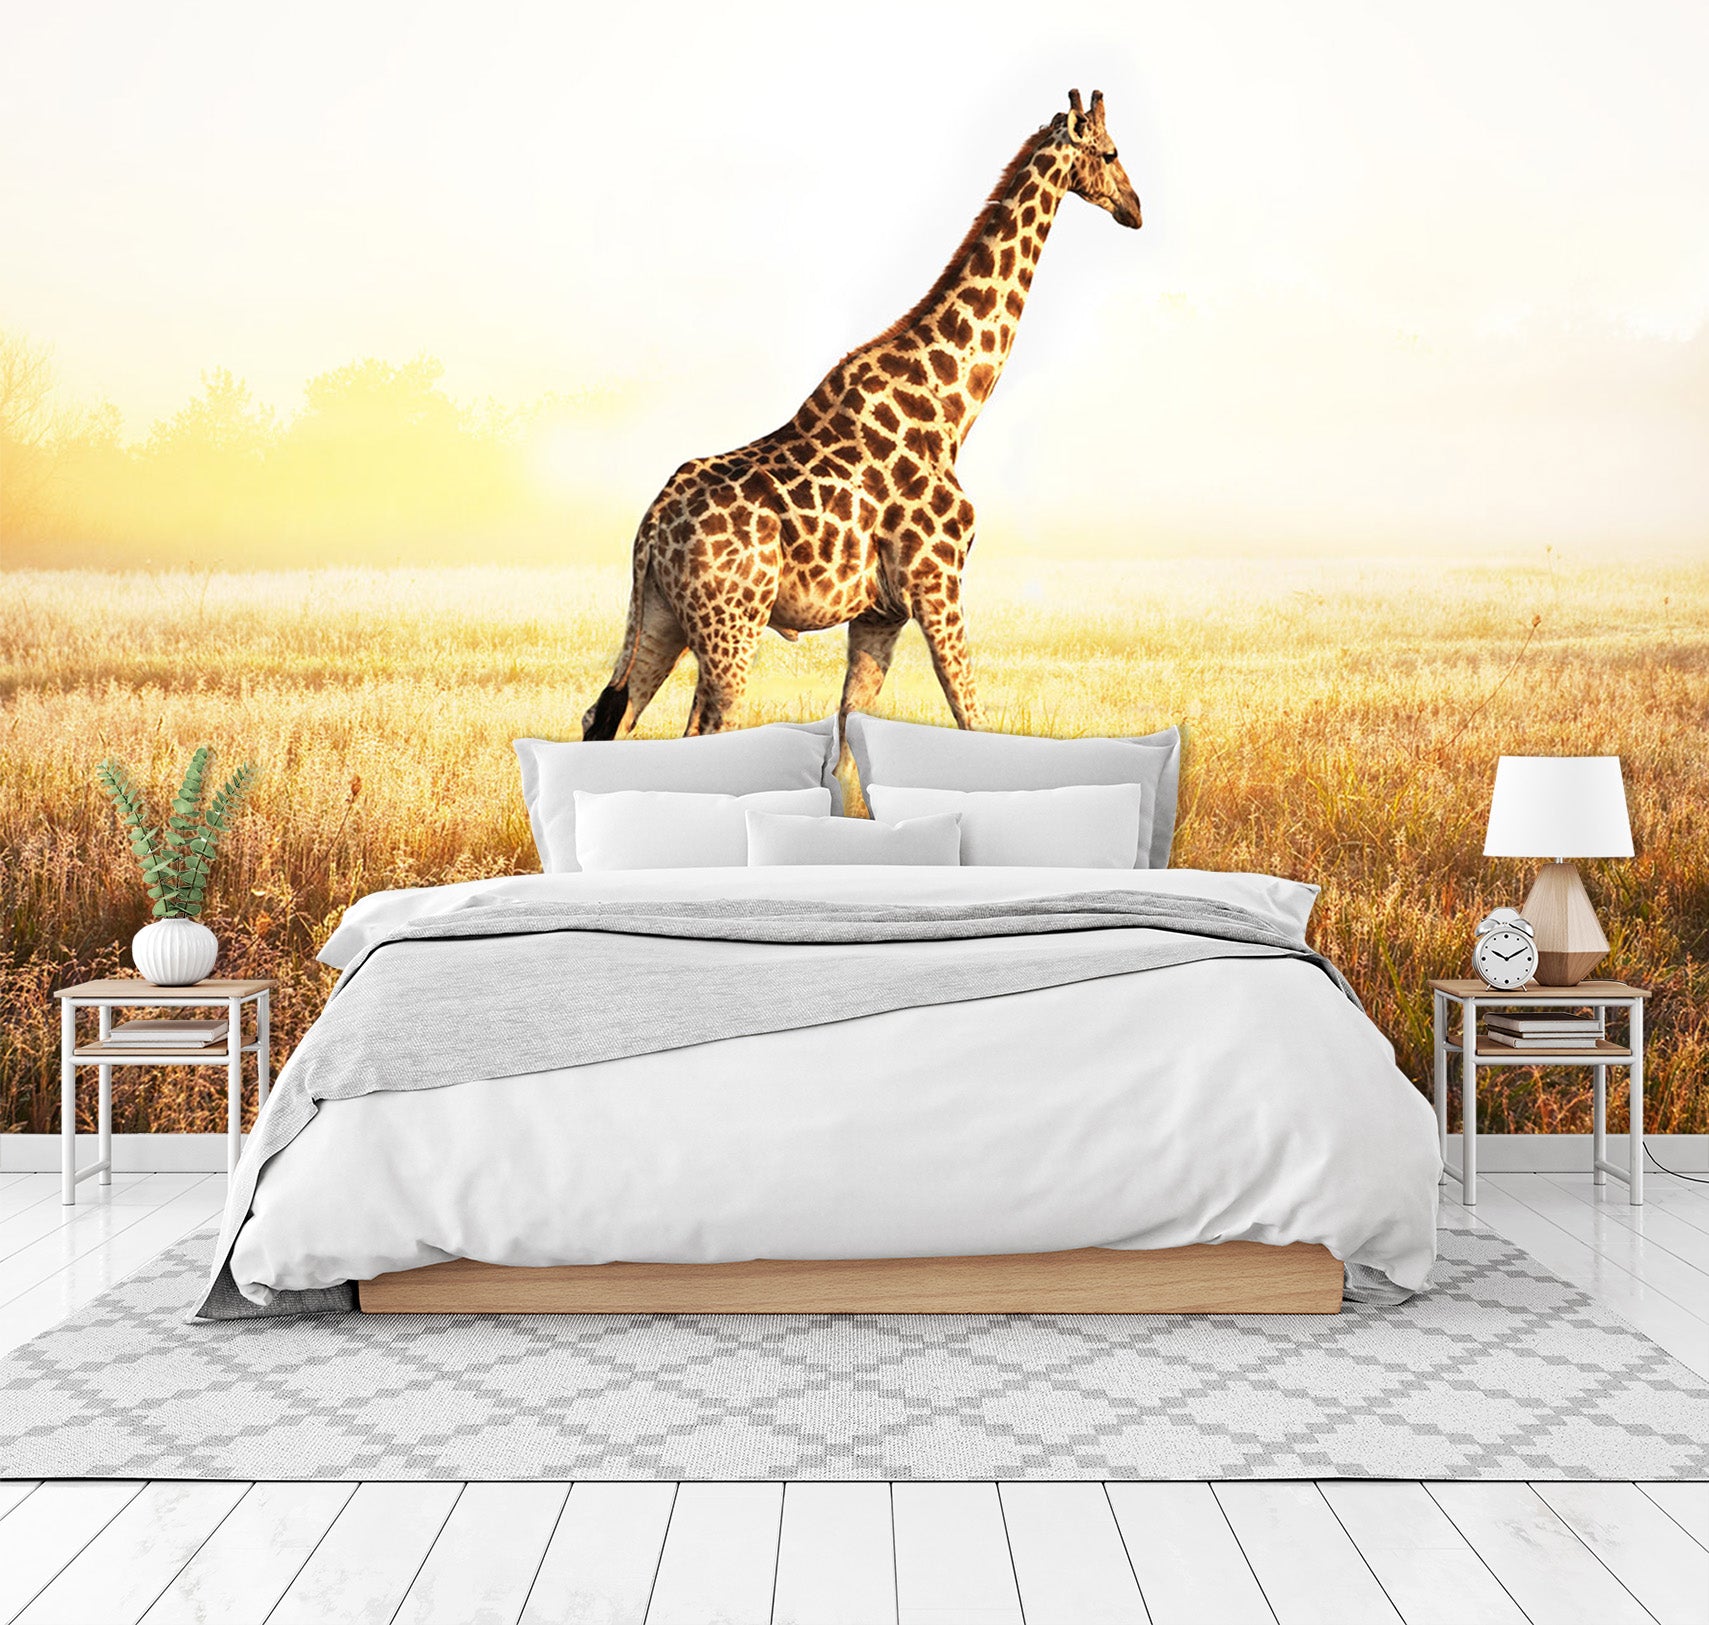 3D Sunset Giraffe 347 Wall Murals